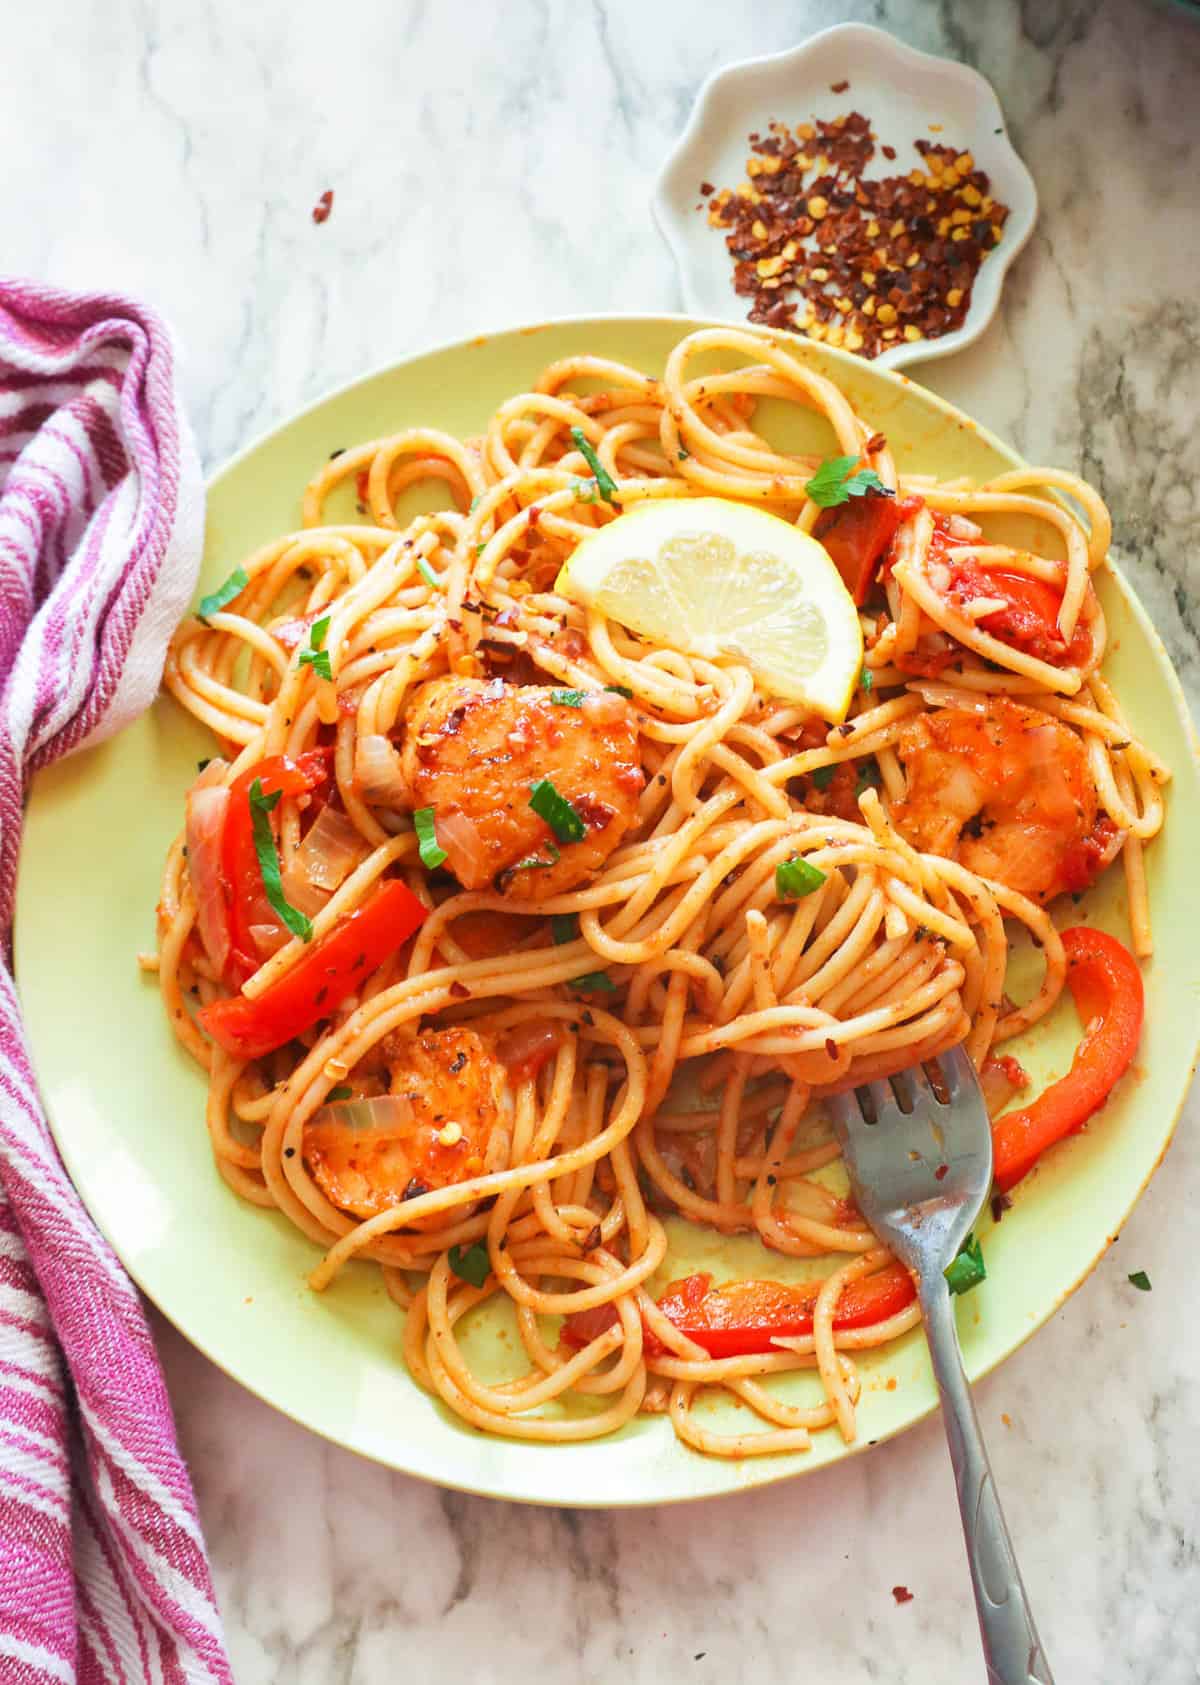 Seafood pasta ready to enjoy